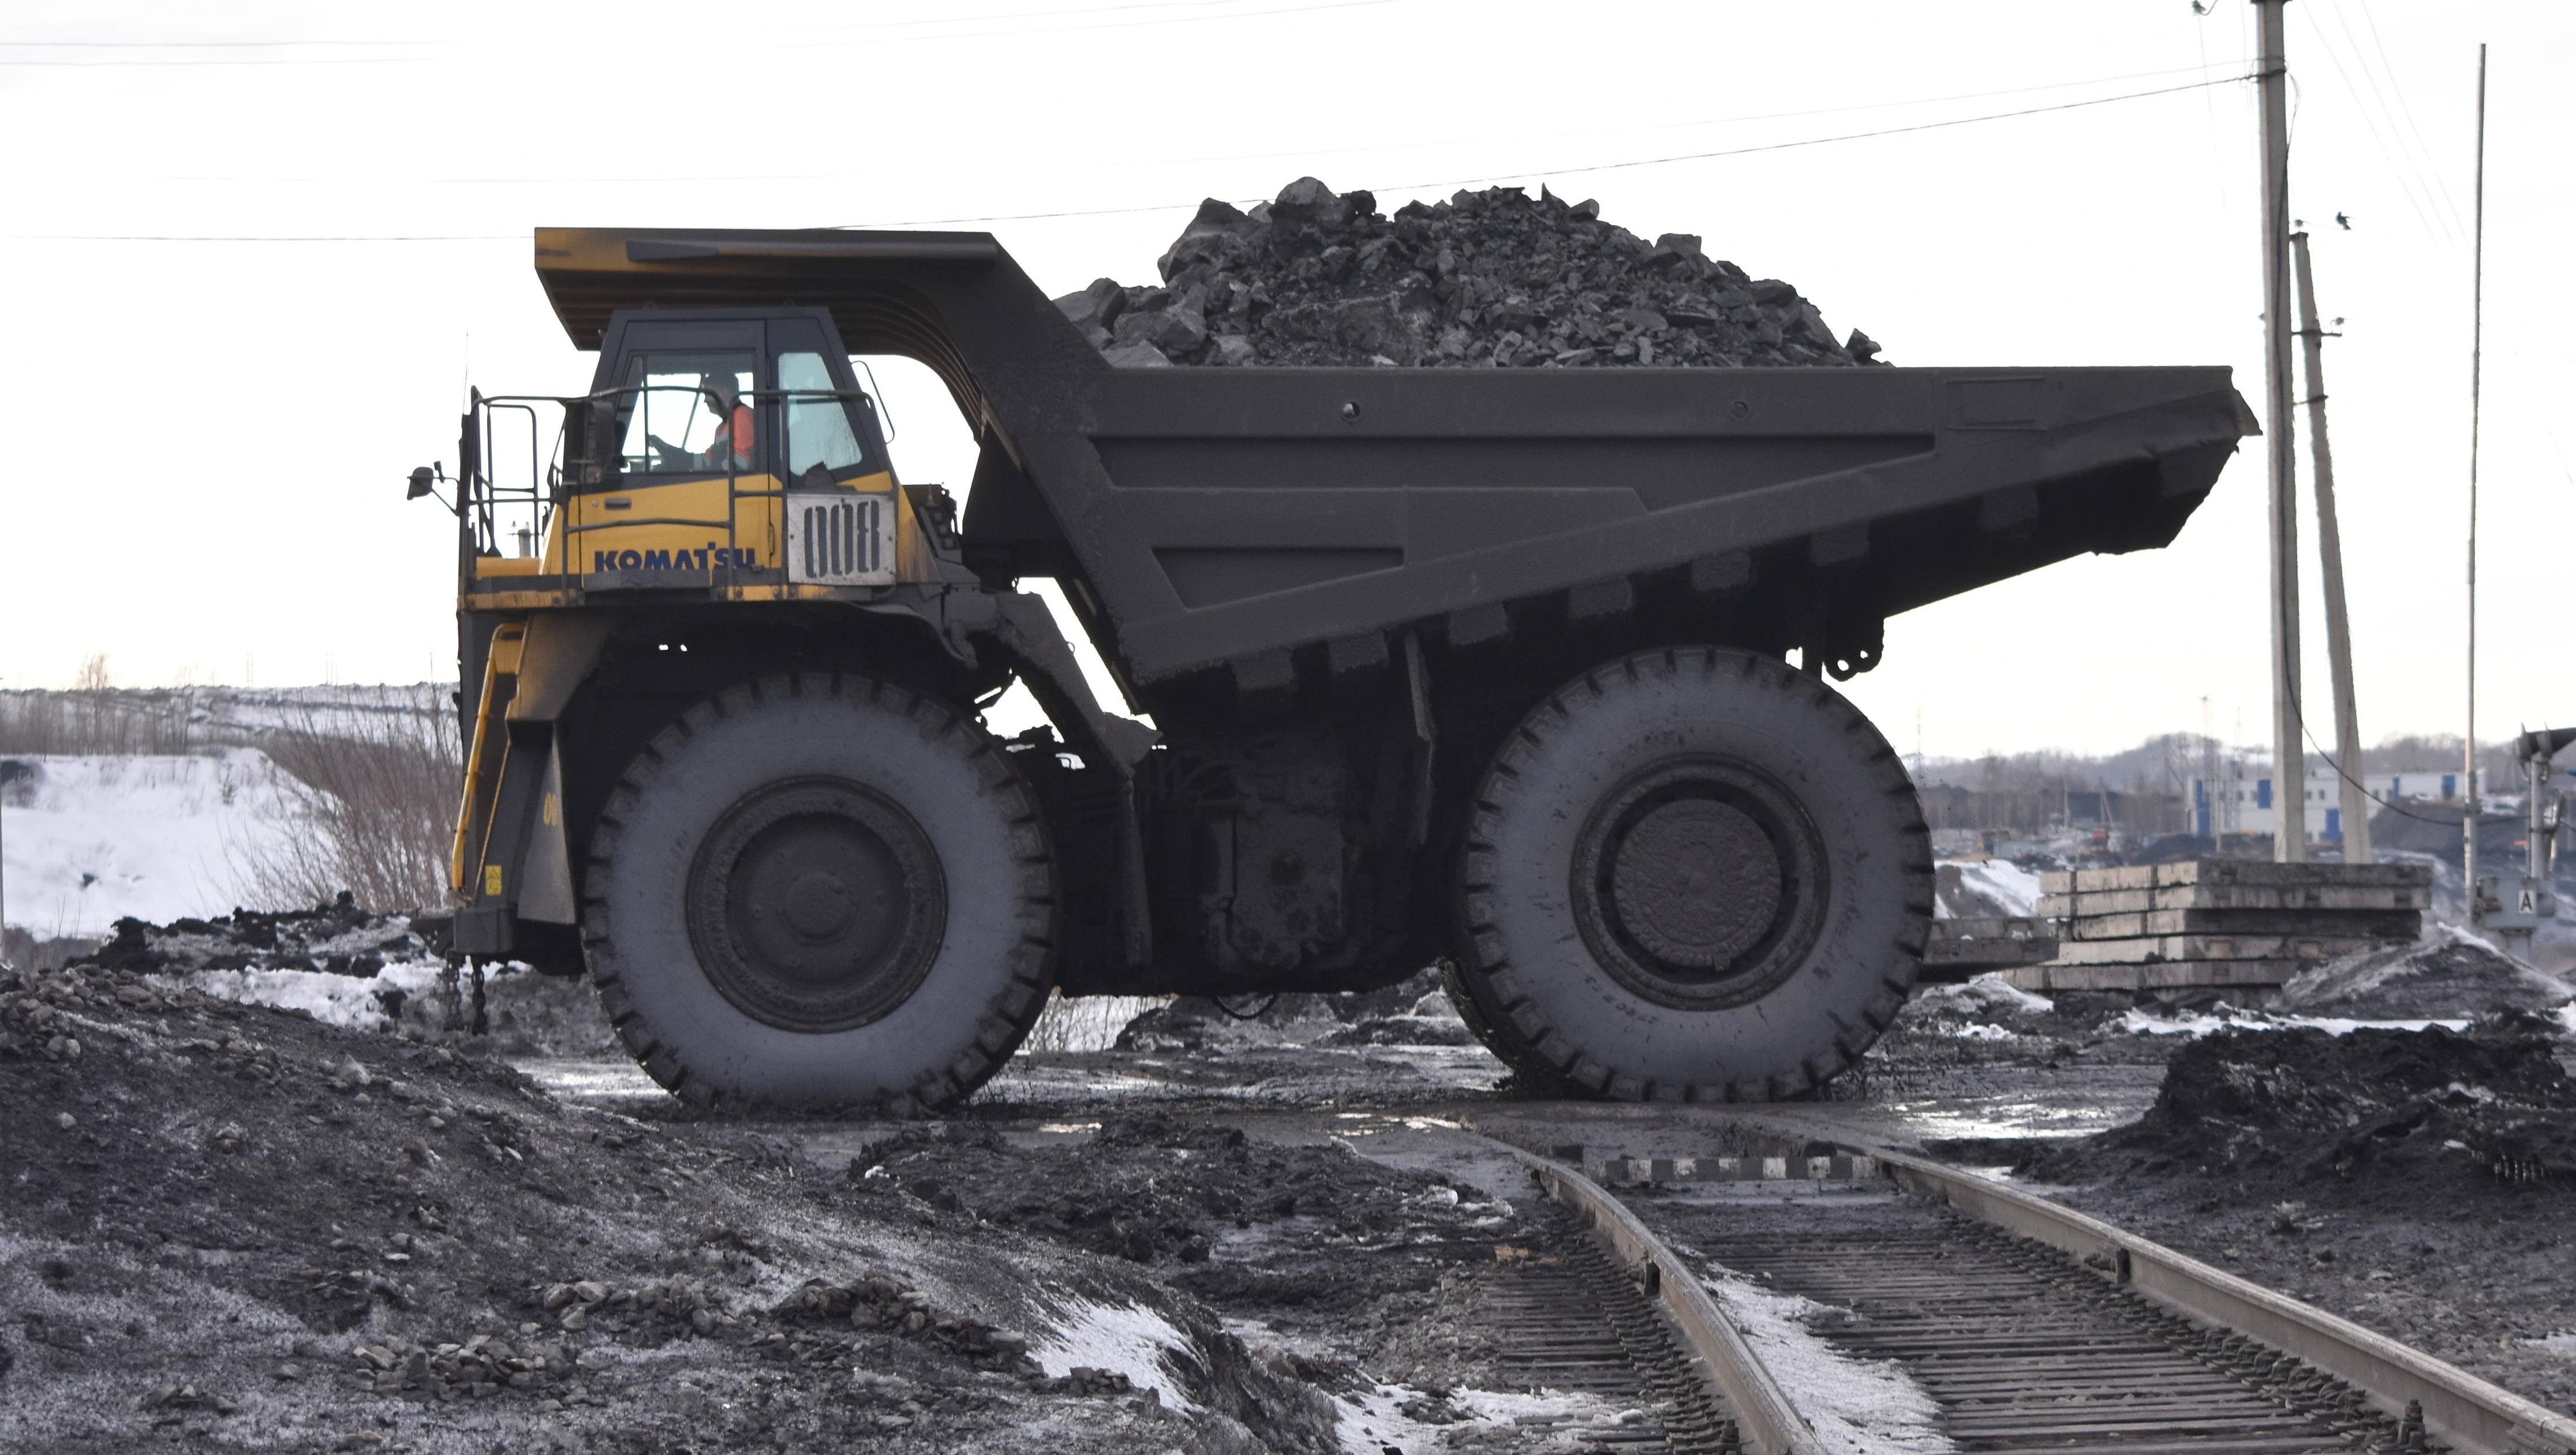 Wegen westlicher Sanktionen: Russland exportiert Rekordmengen Kohle nach Indien